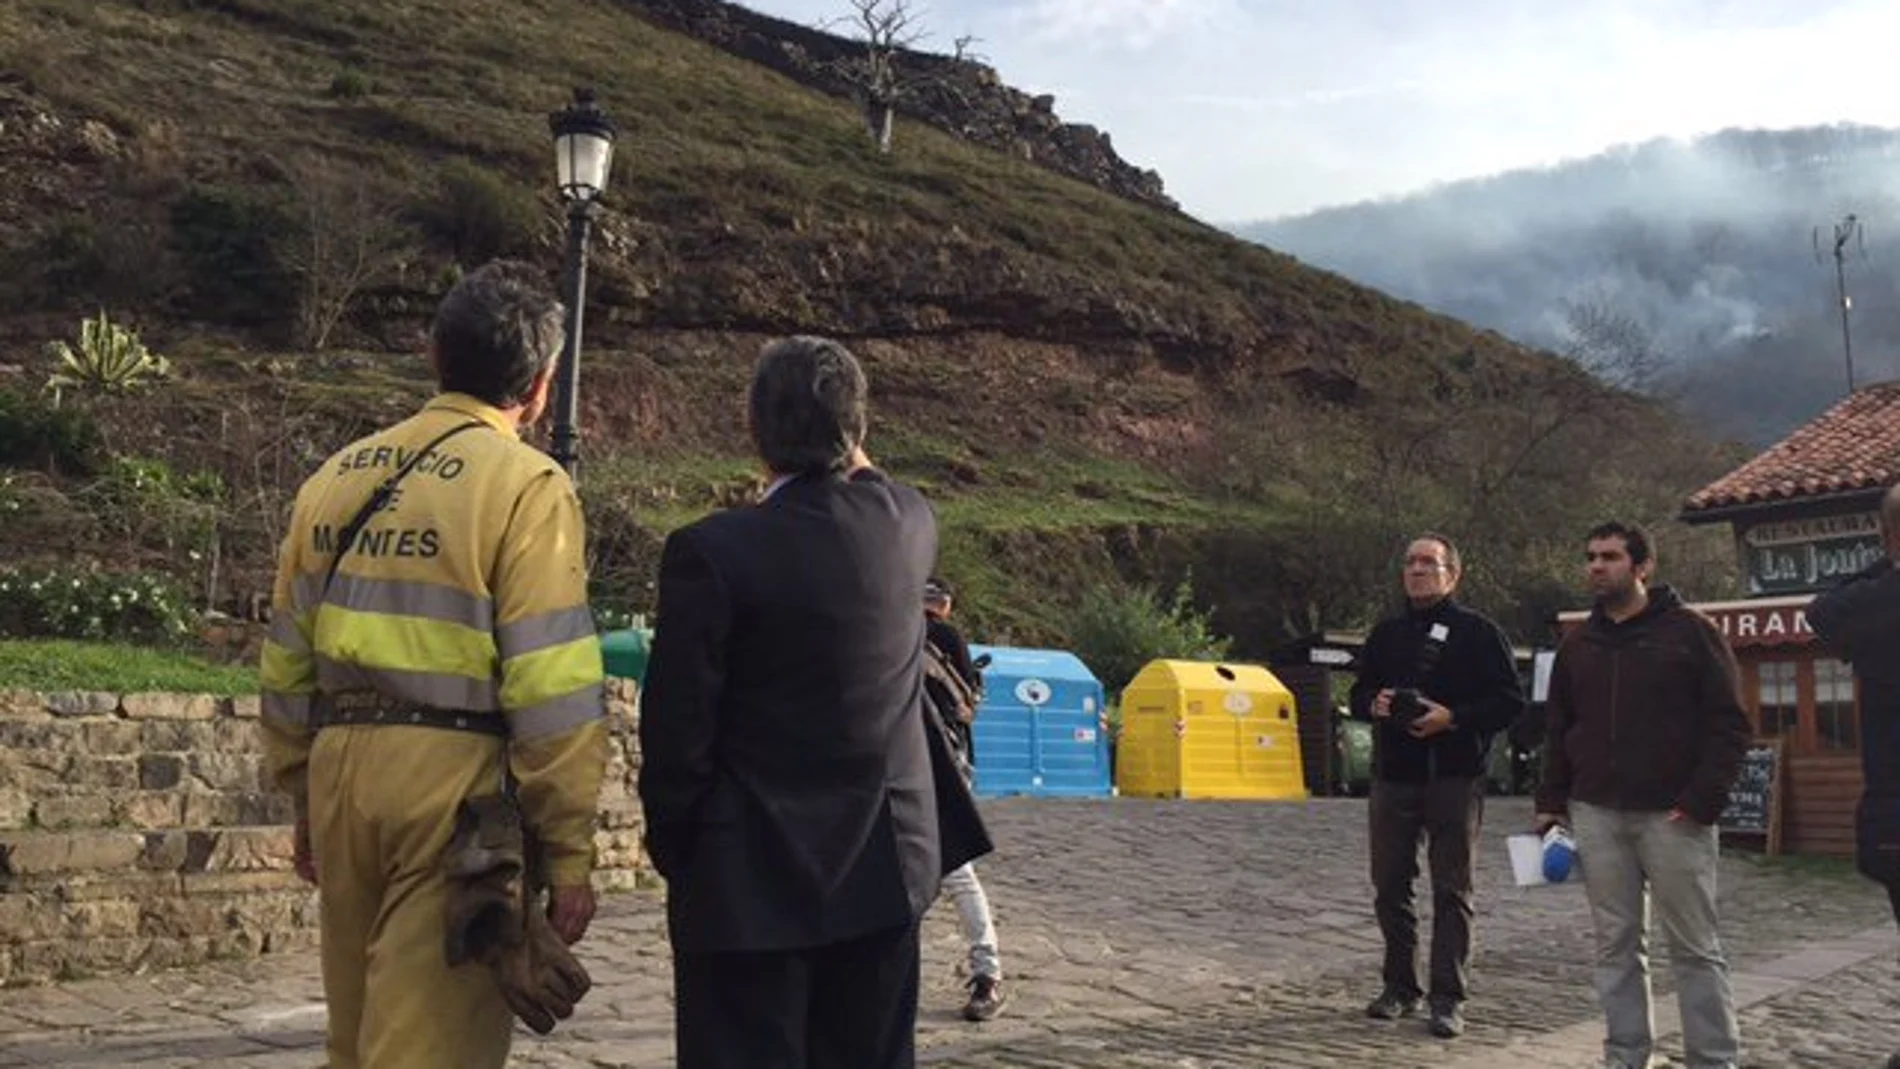 El presidente cántabro, Miguel Ángel Revilla, charla con un empleado del servicio de montes sobre uno de los incendios de la región